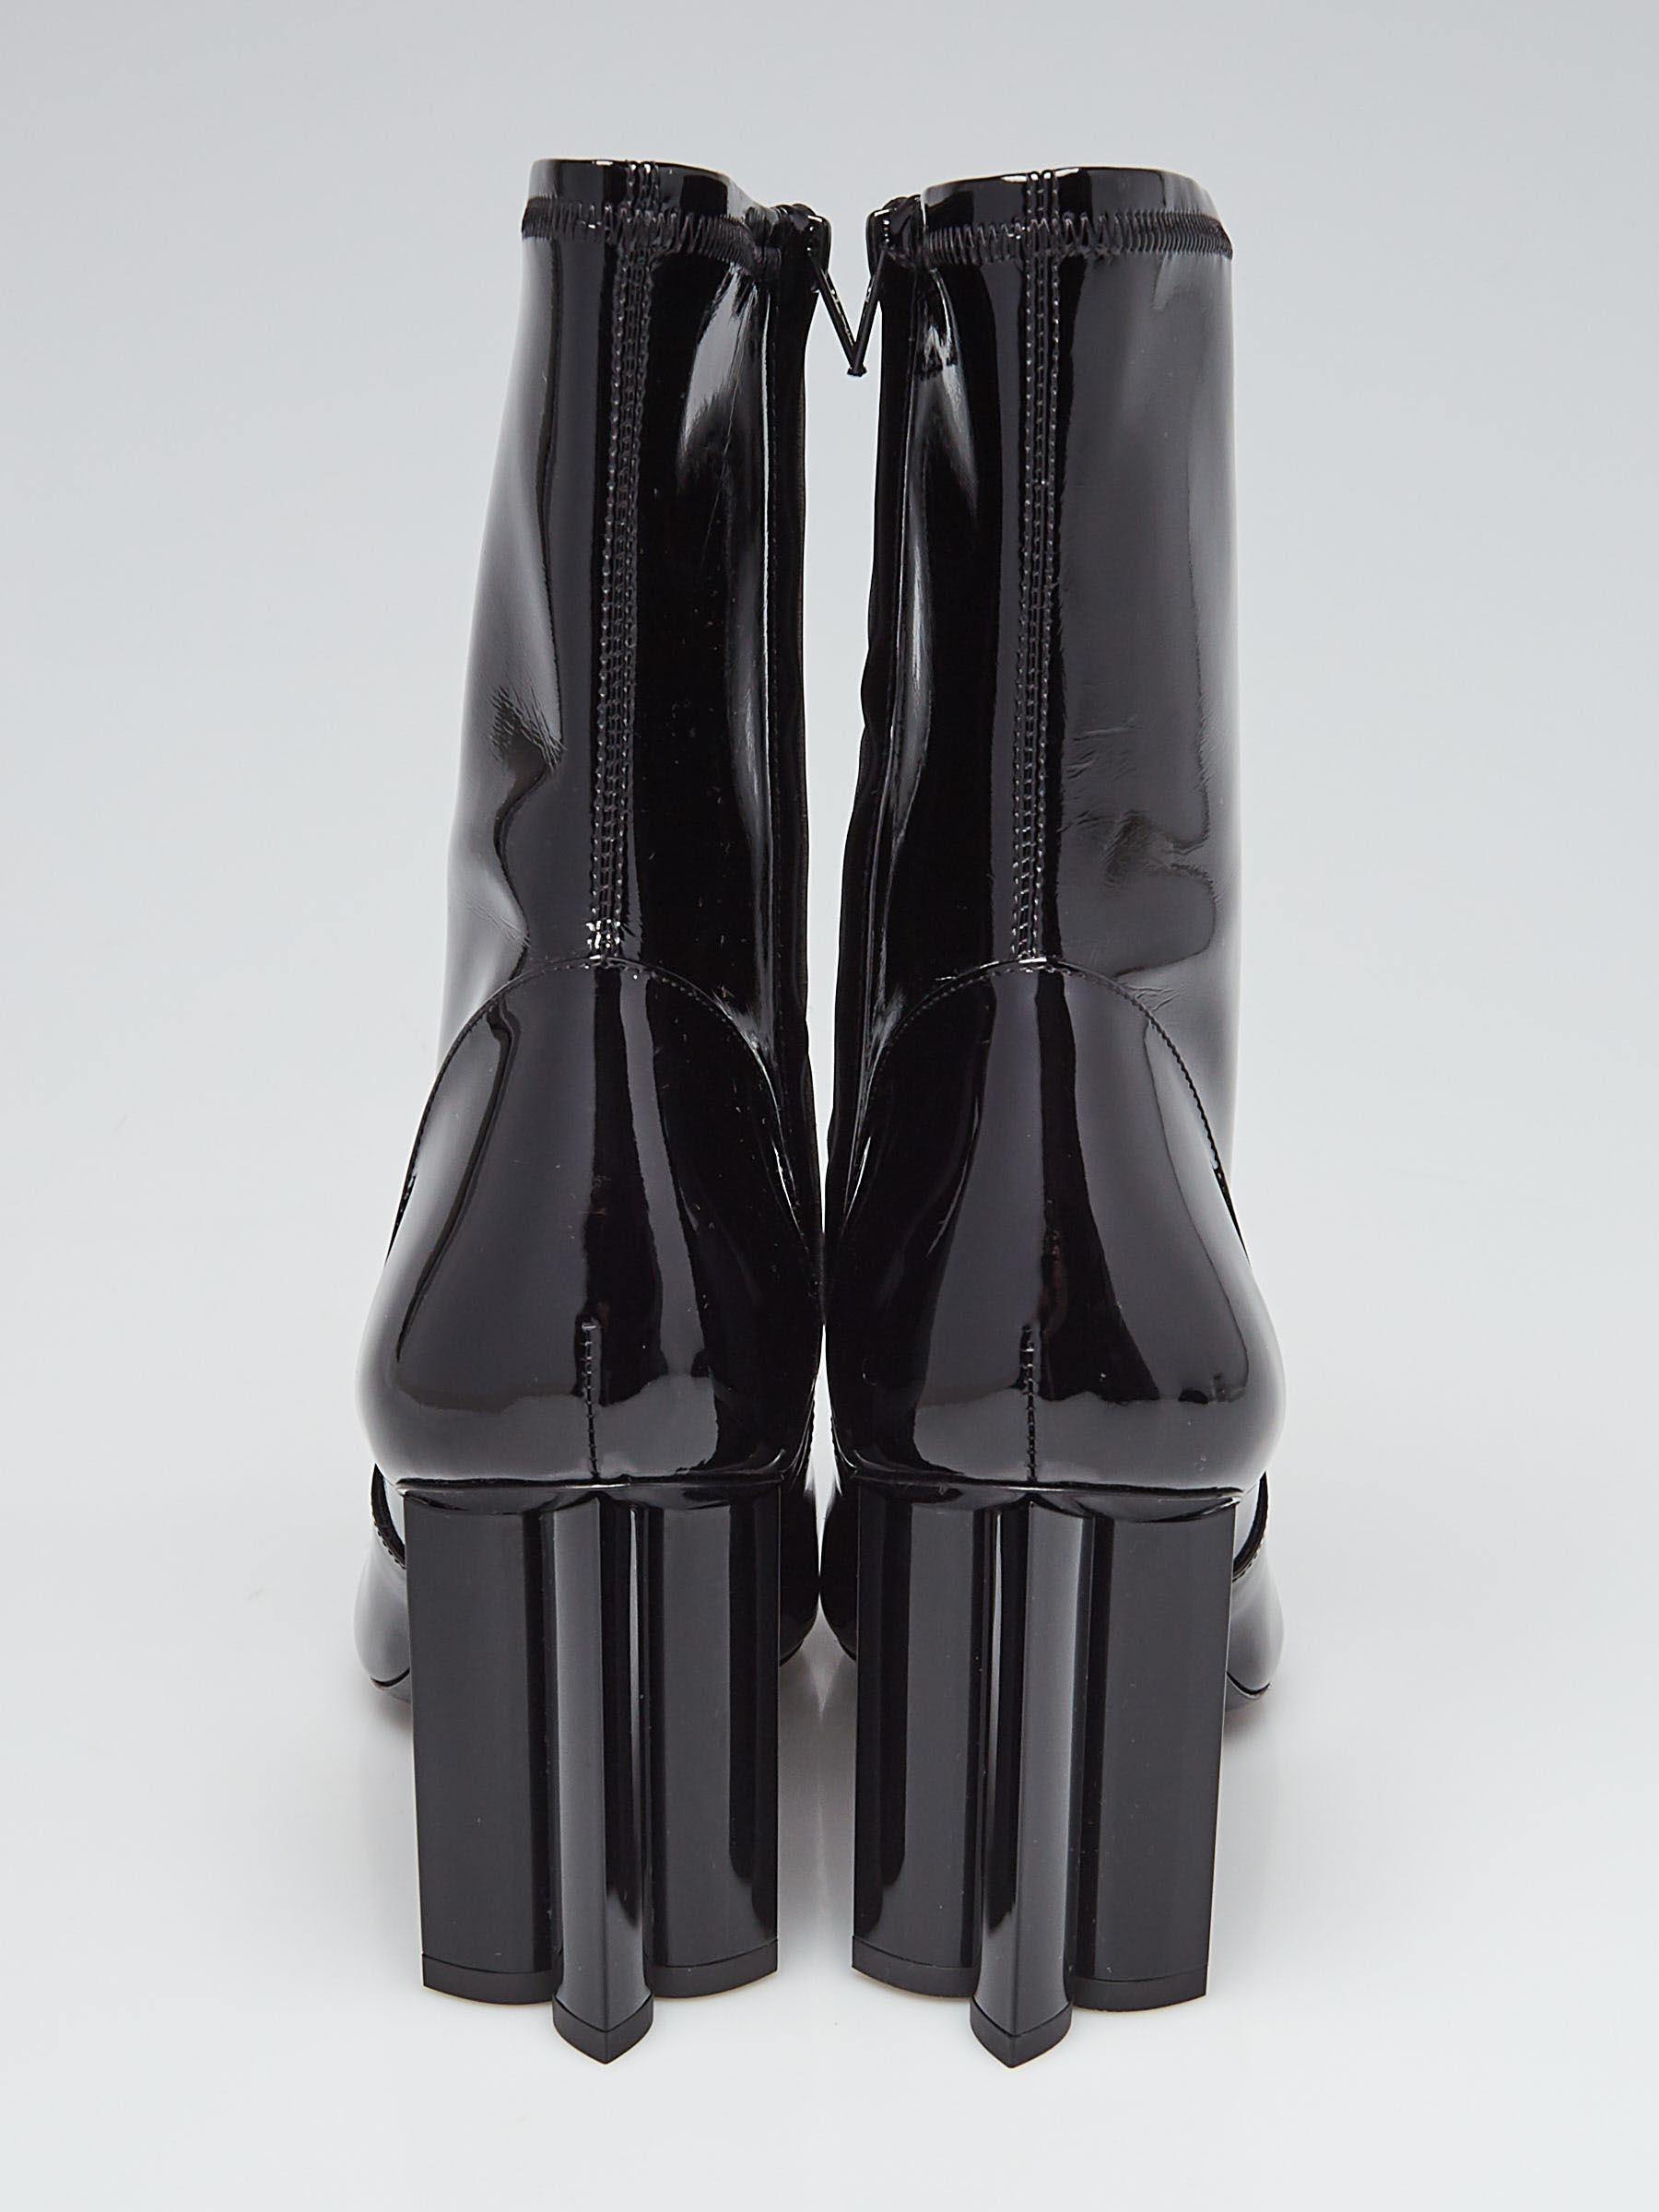 Authentic Louis Vuitton Silhouette Ankle Boot 8cm Bordeaux Patent